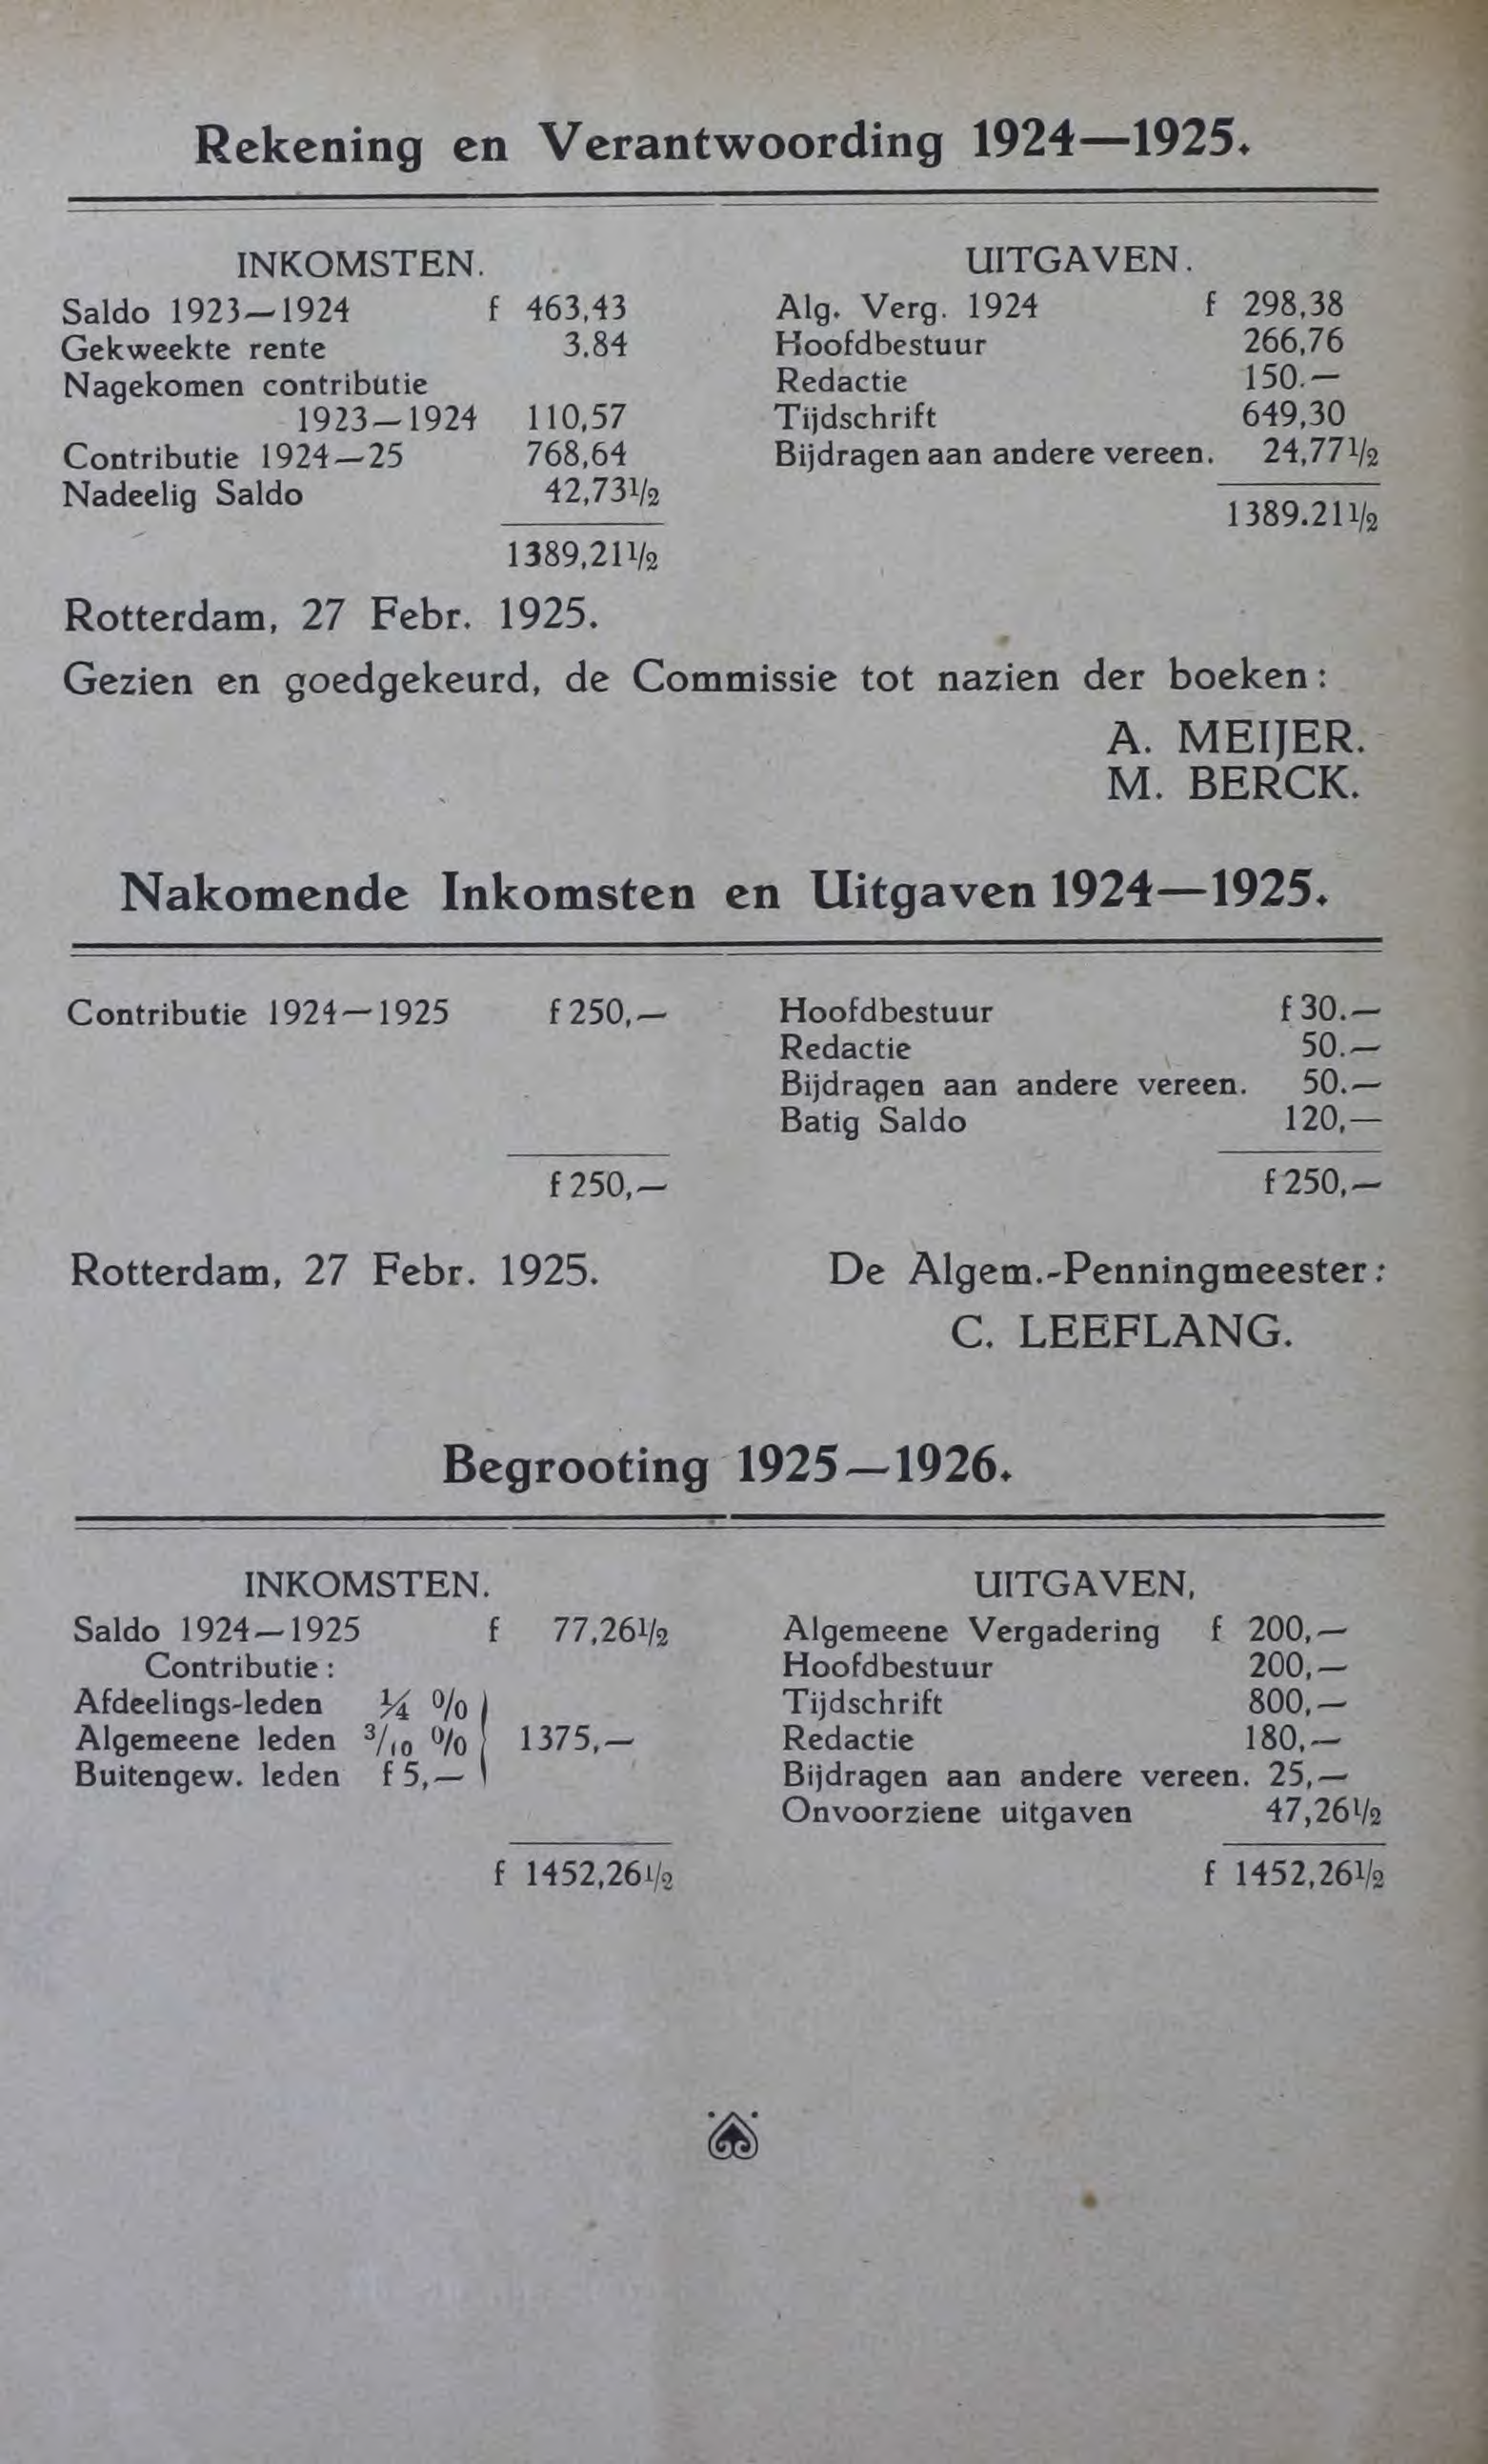 Rekening en Verantwoording 1924-1925. INKOMSTEN. Saldo 1923,-1924 Gekweekte rente Nagekomen contributie 1923--1924 Contributie 1924-25 Nadeelig Saldo f 463,43 3.